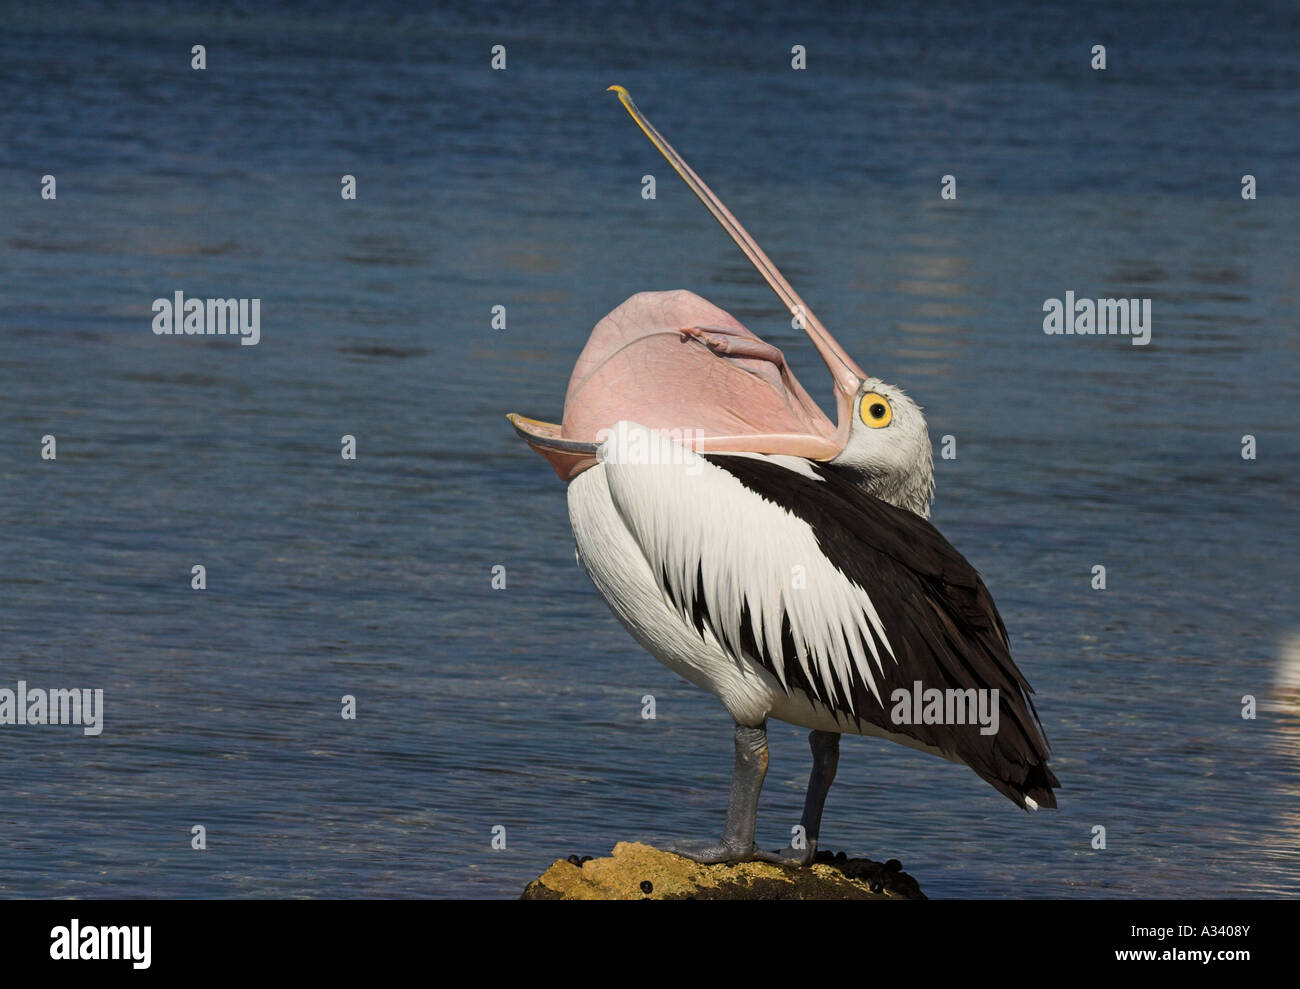 australian pelican, pelecanus conspicillatus, stretching puch over neck Stock Photo